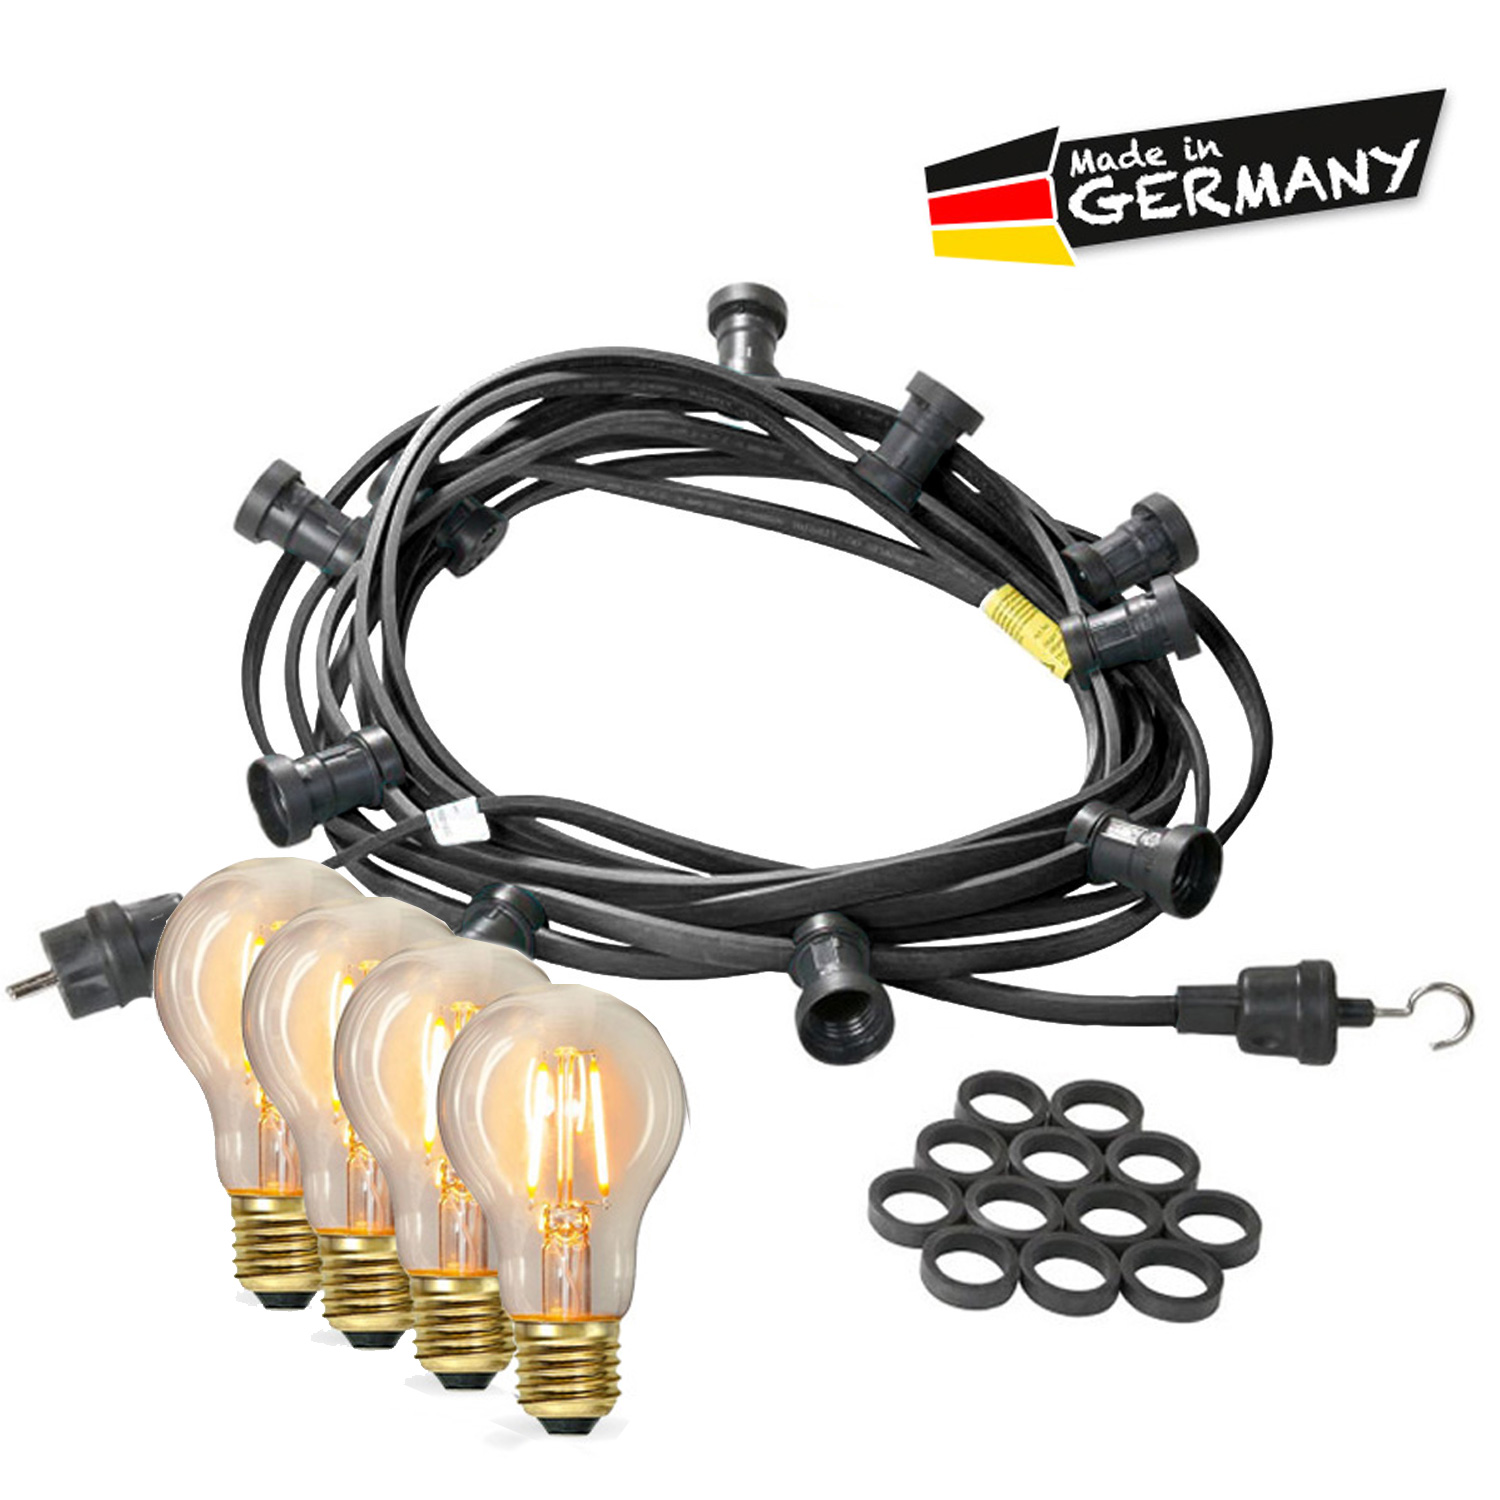 Illu-/Partylichterkette 5m - Außenlichterkette - Made in Germany - 5 x Edison LED Filamentlampen